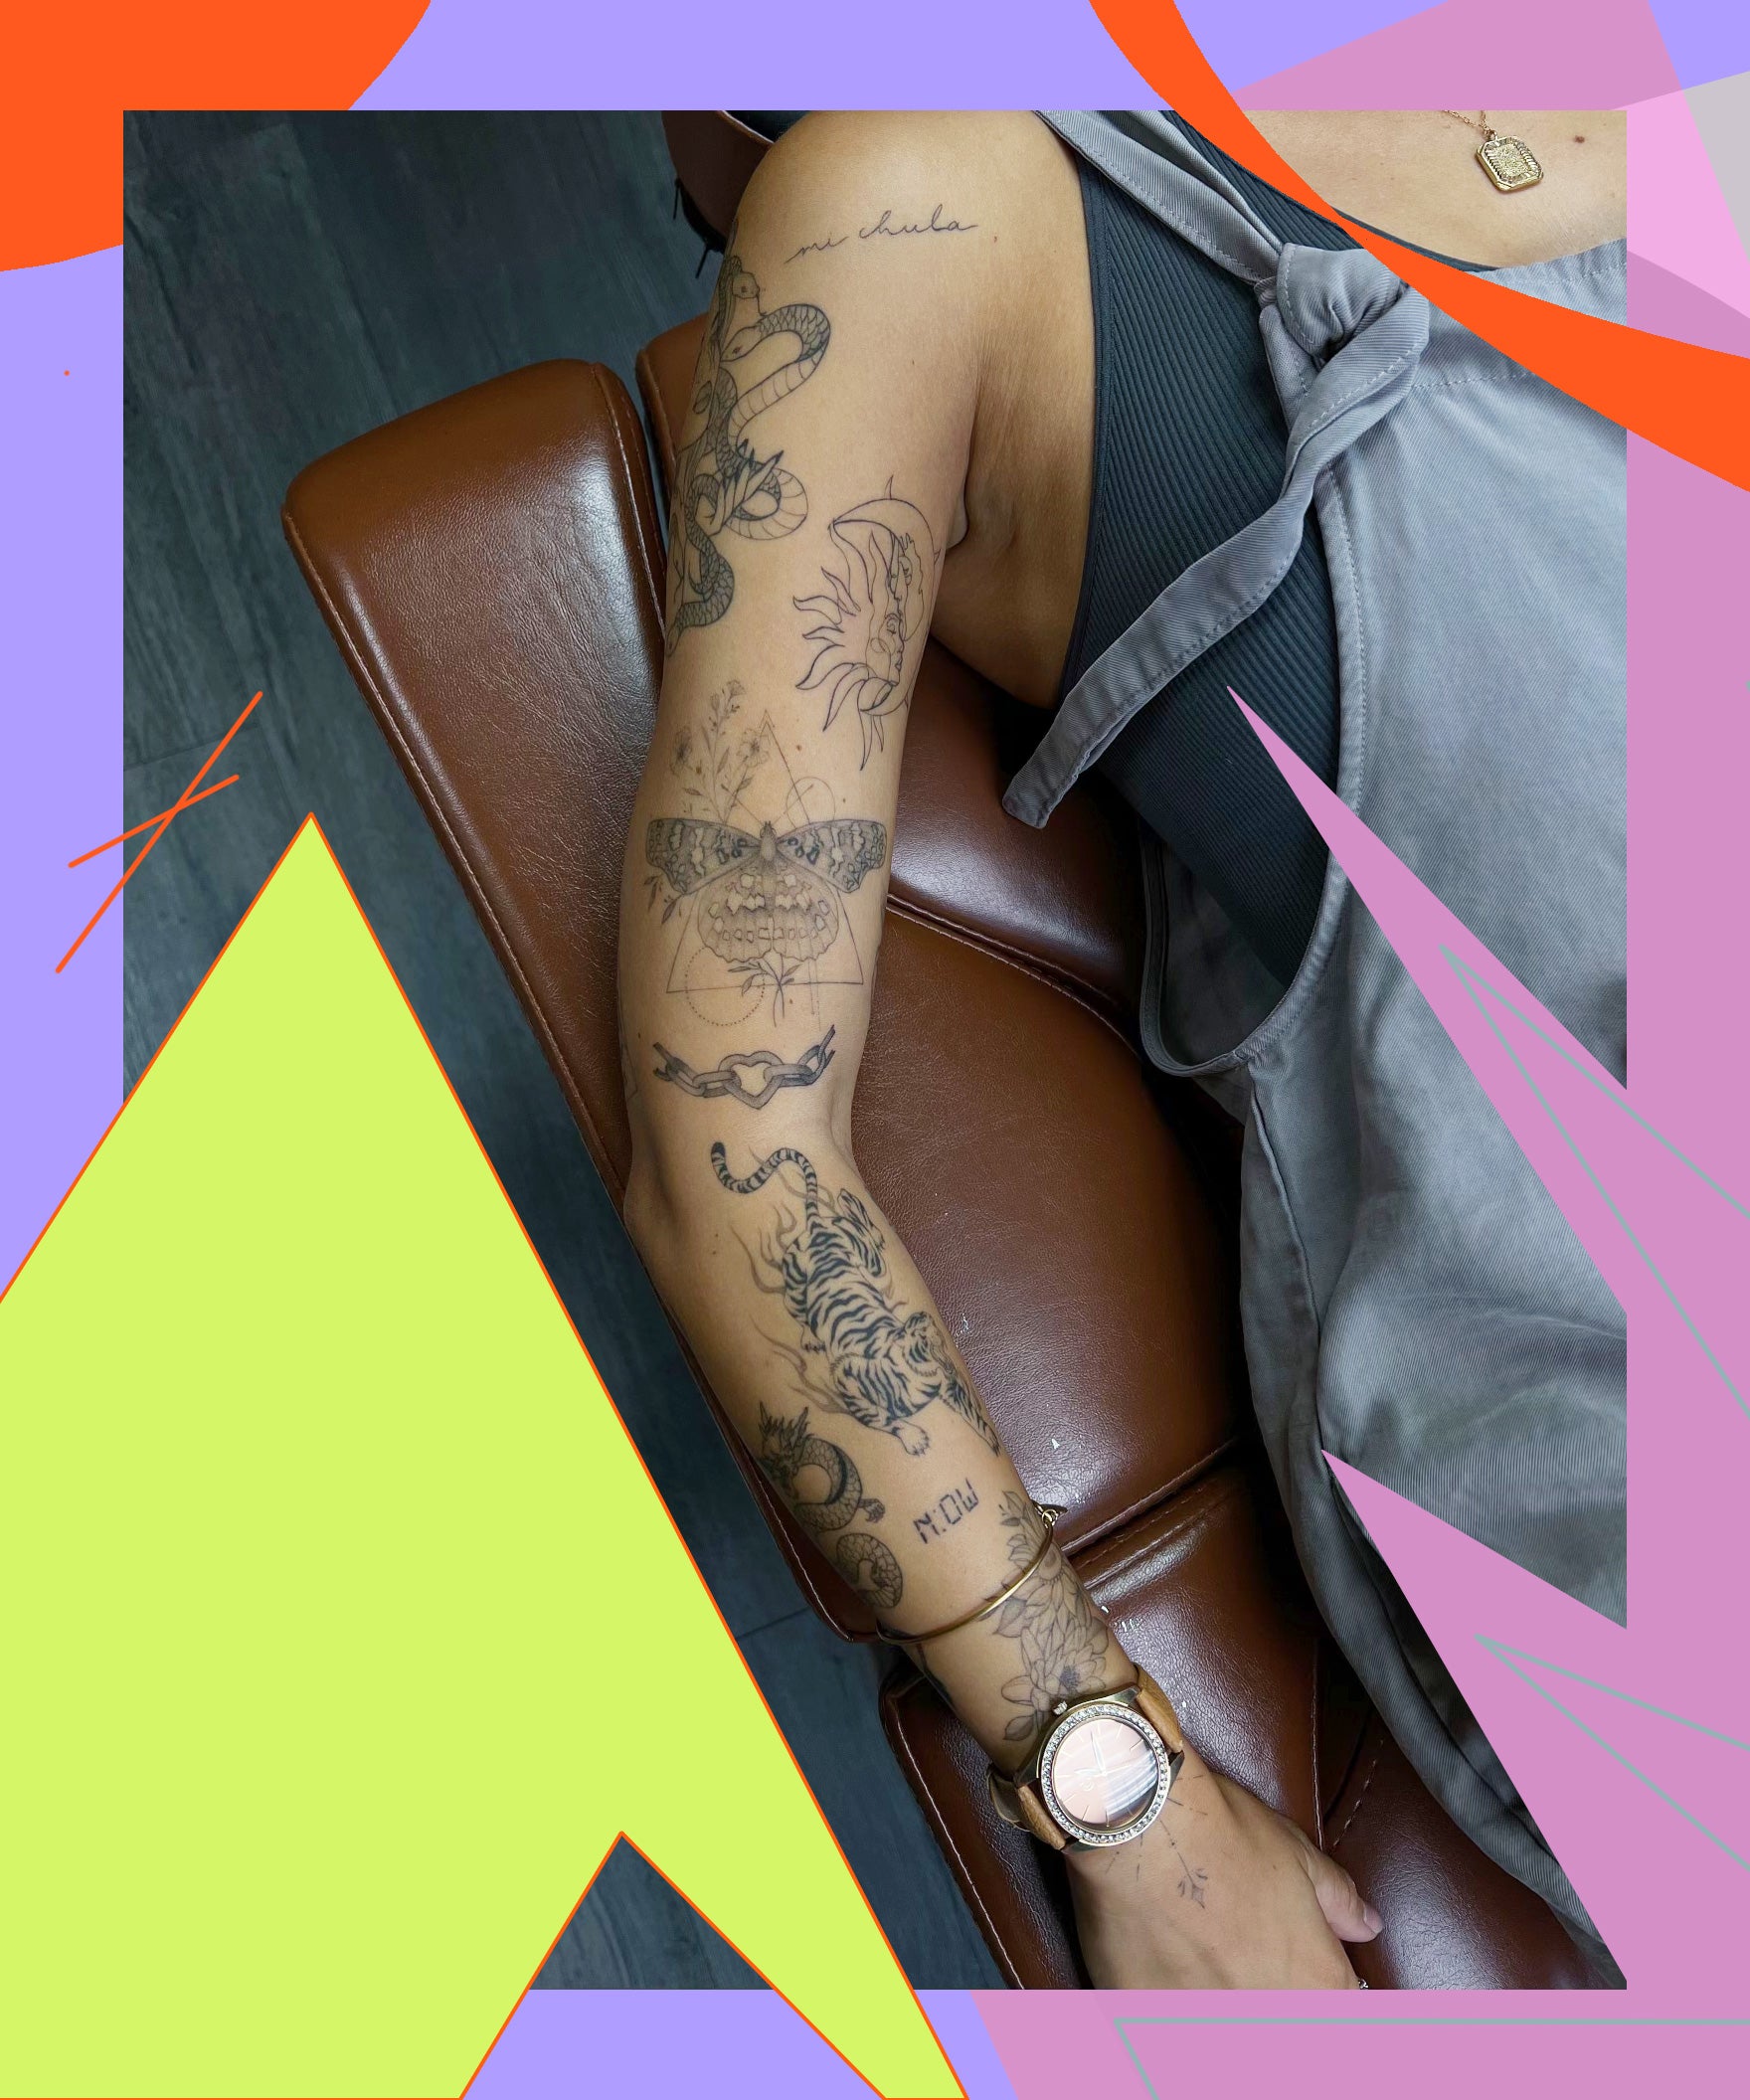 Stylish T❤️S tattoo design 👌 ❤️ trending tattoo #tattoo #new #viral #... |  TikTok